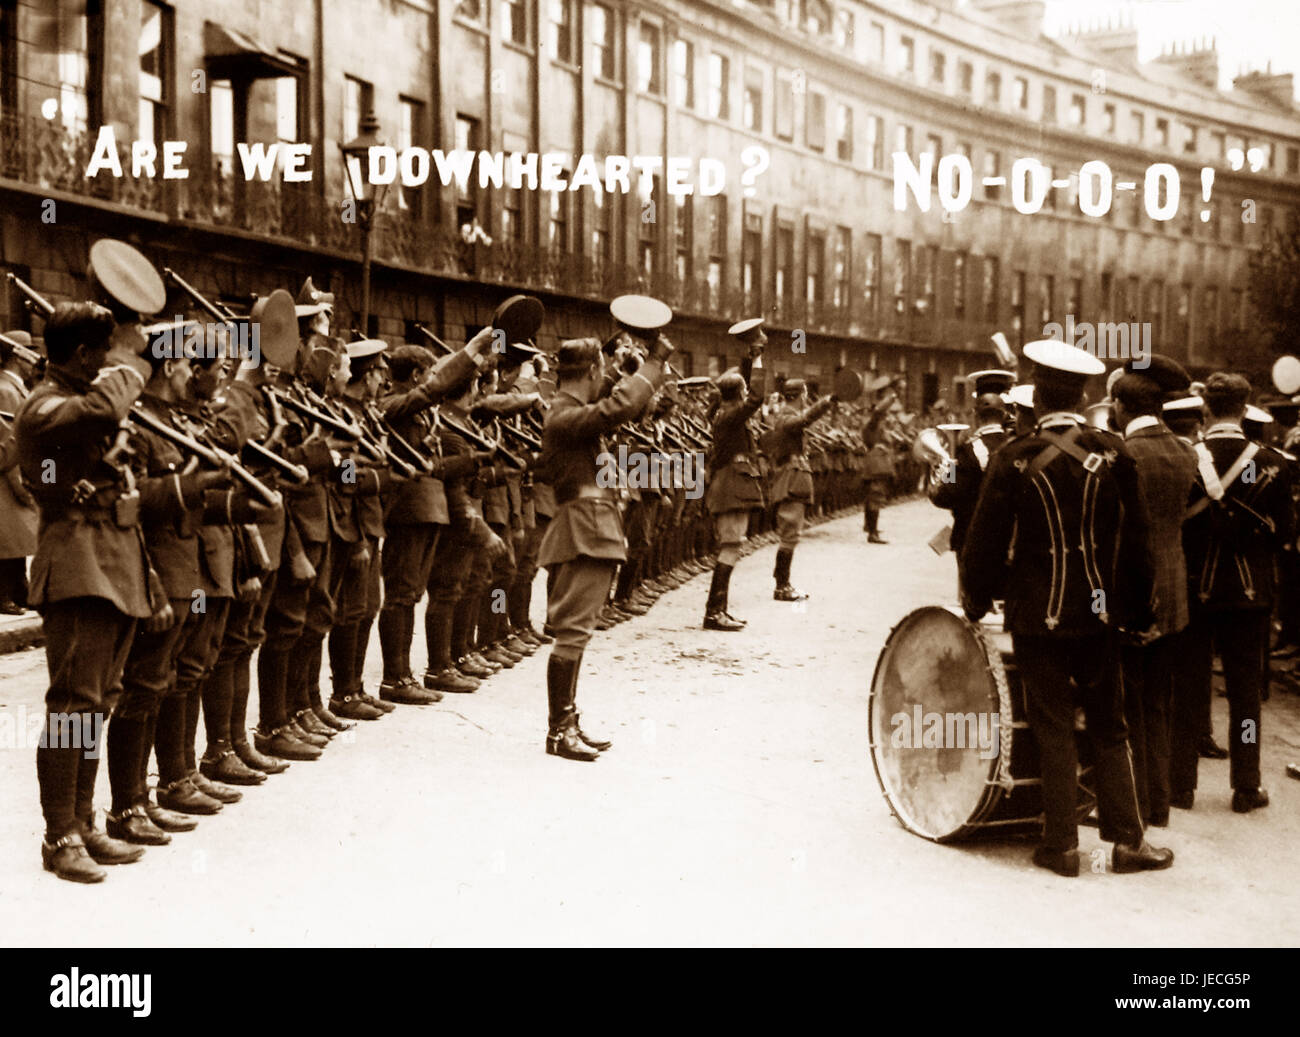 Cavendish Crescent, Bath, WW1 morale booster message Stock Photo